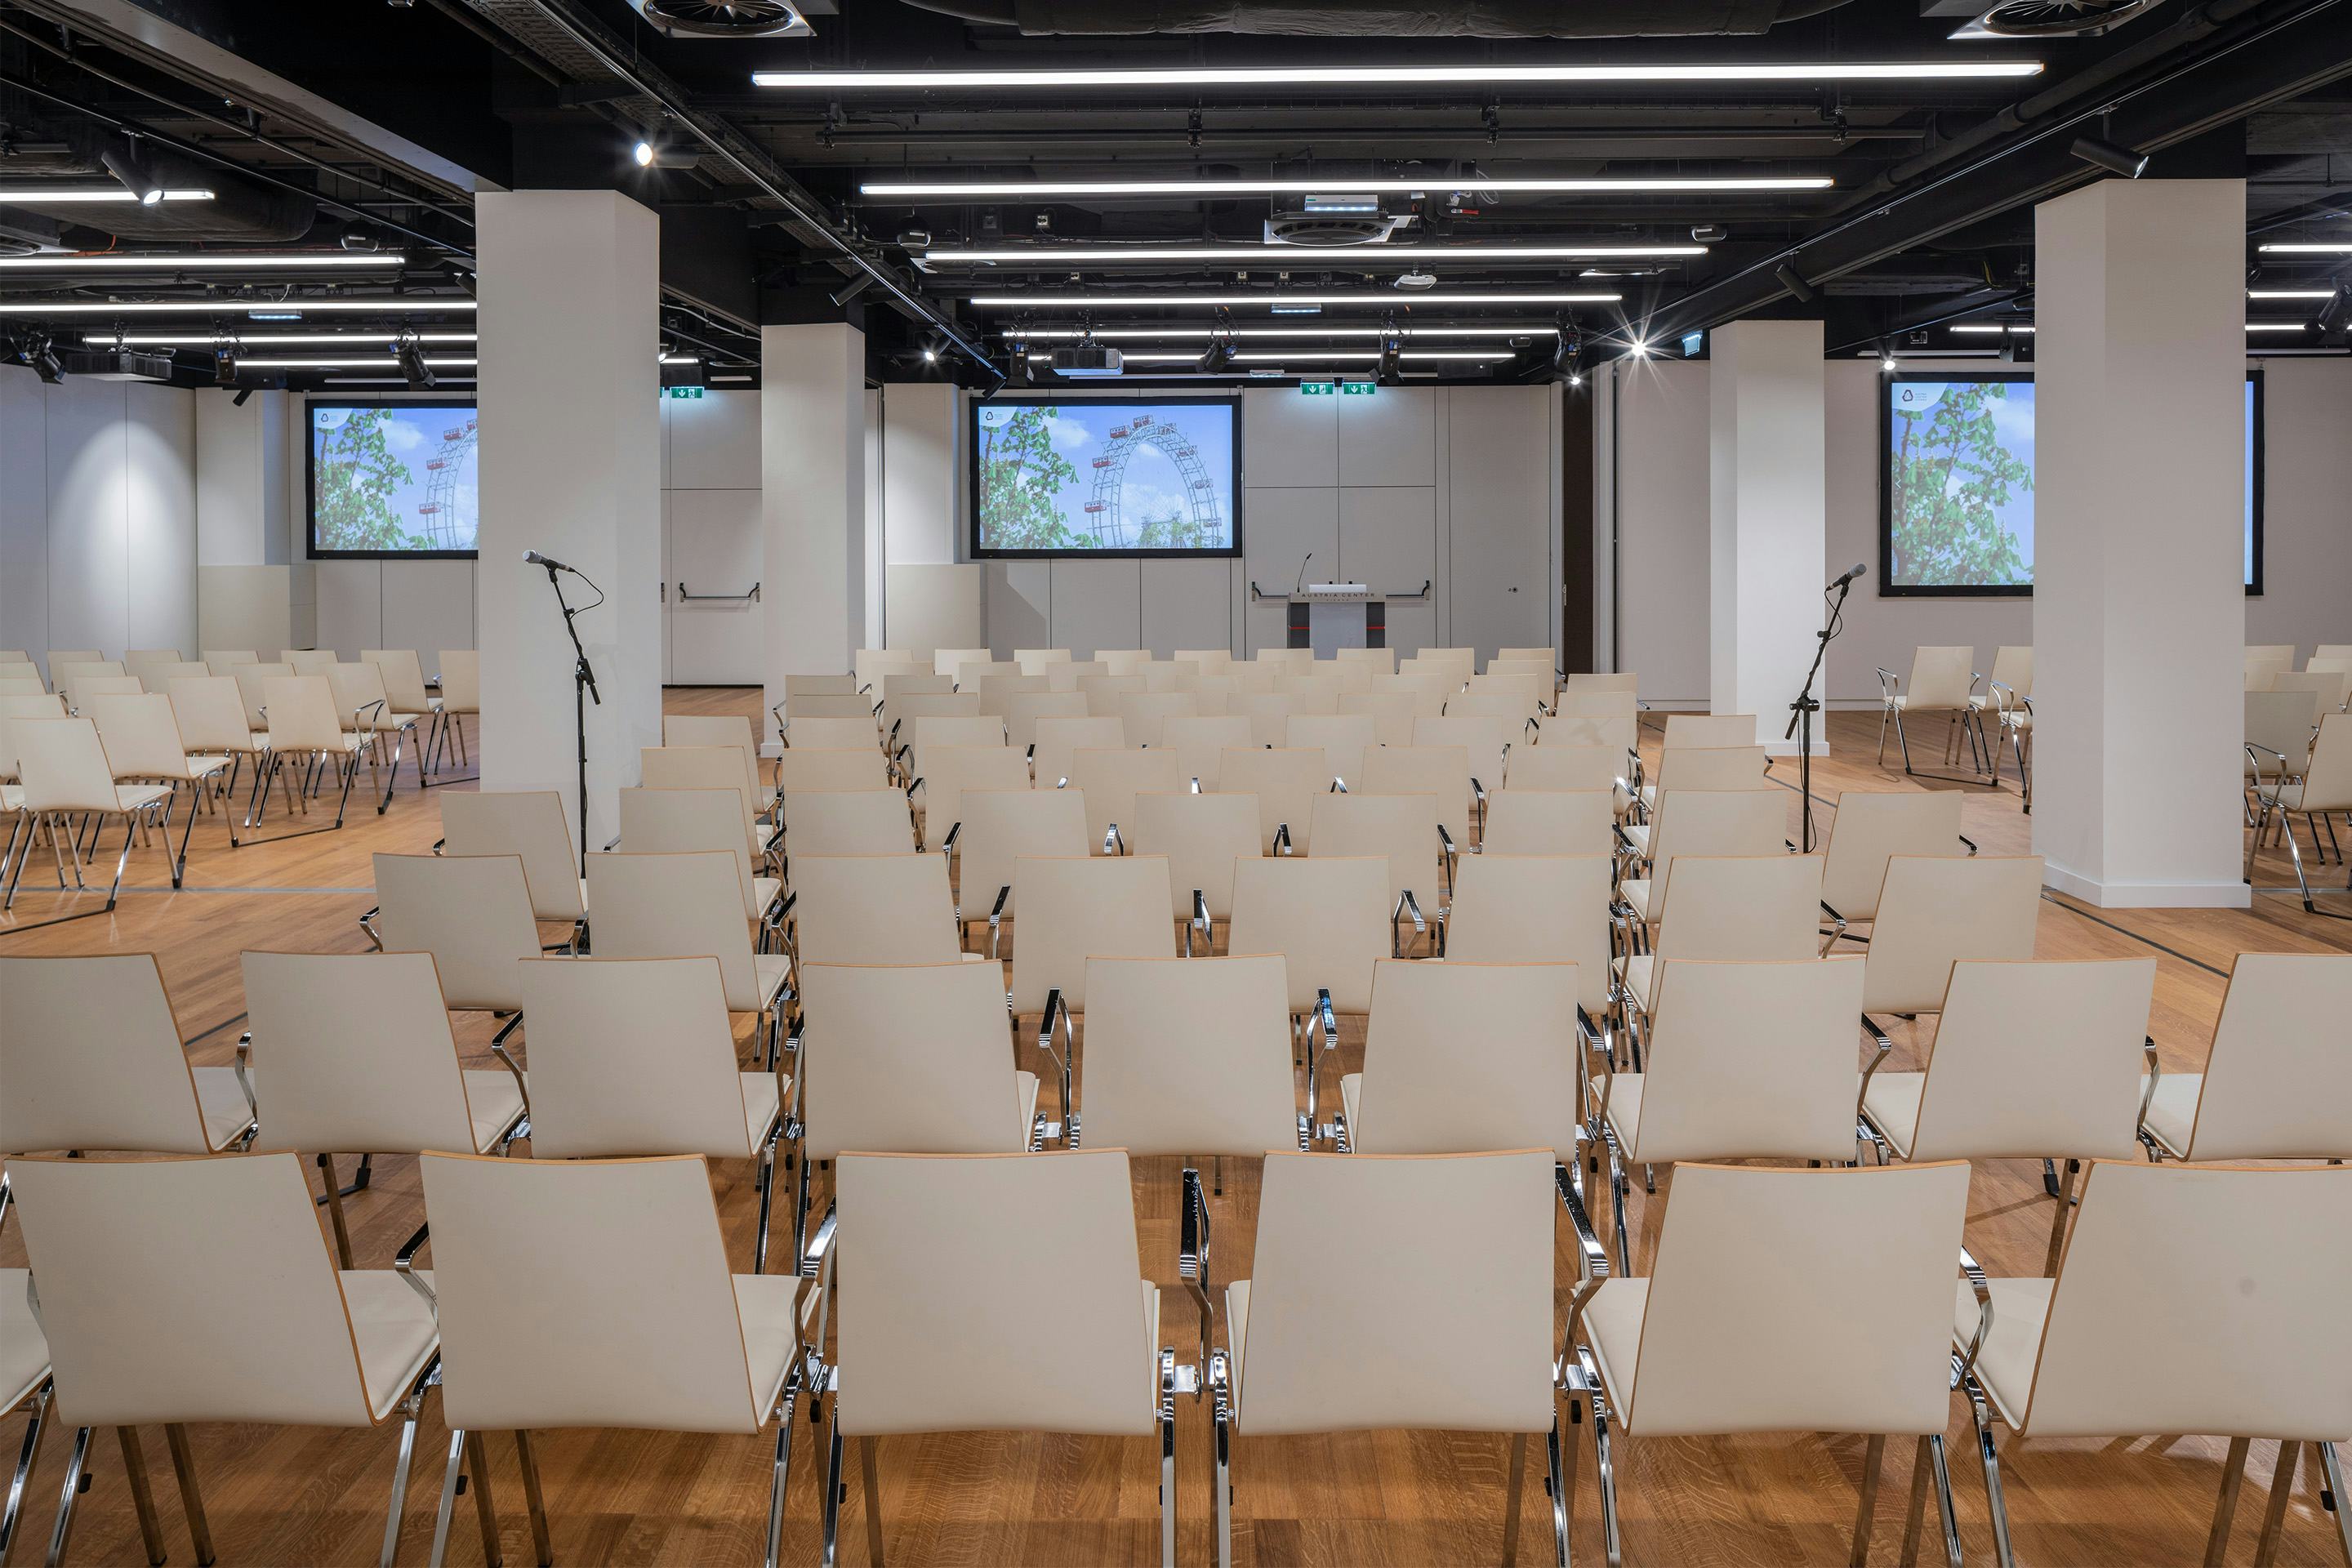 Foto: Sitzreihen in einem Saal mit Holzboden, Monitore